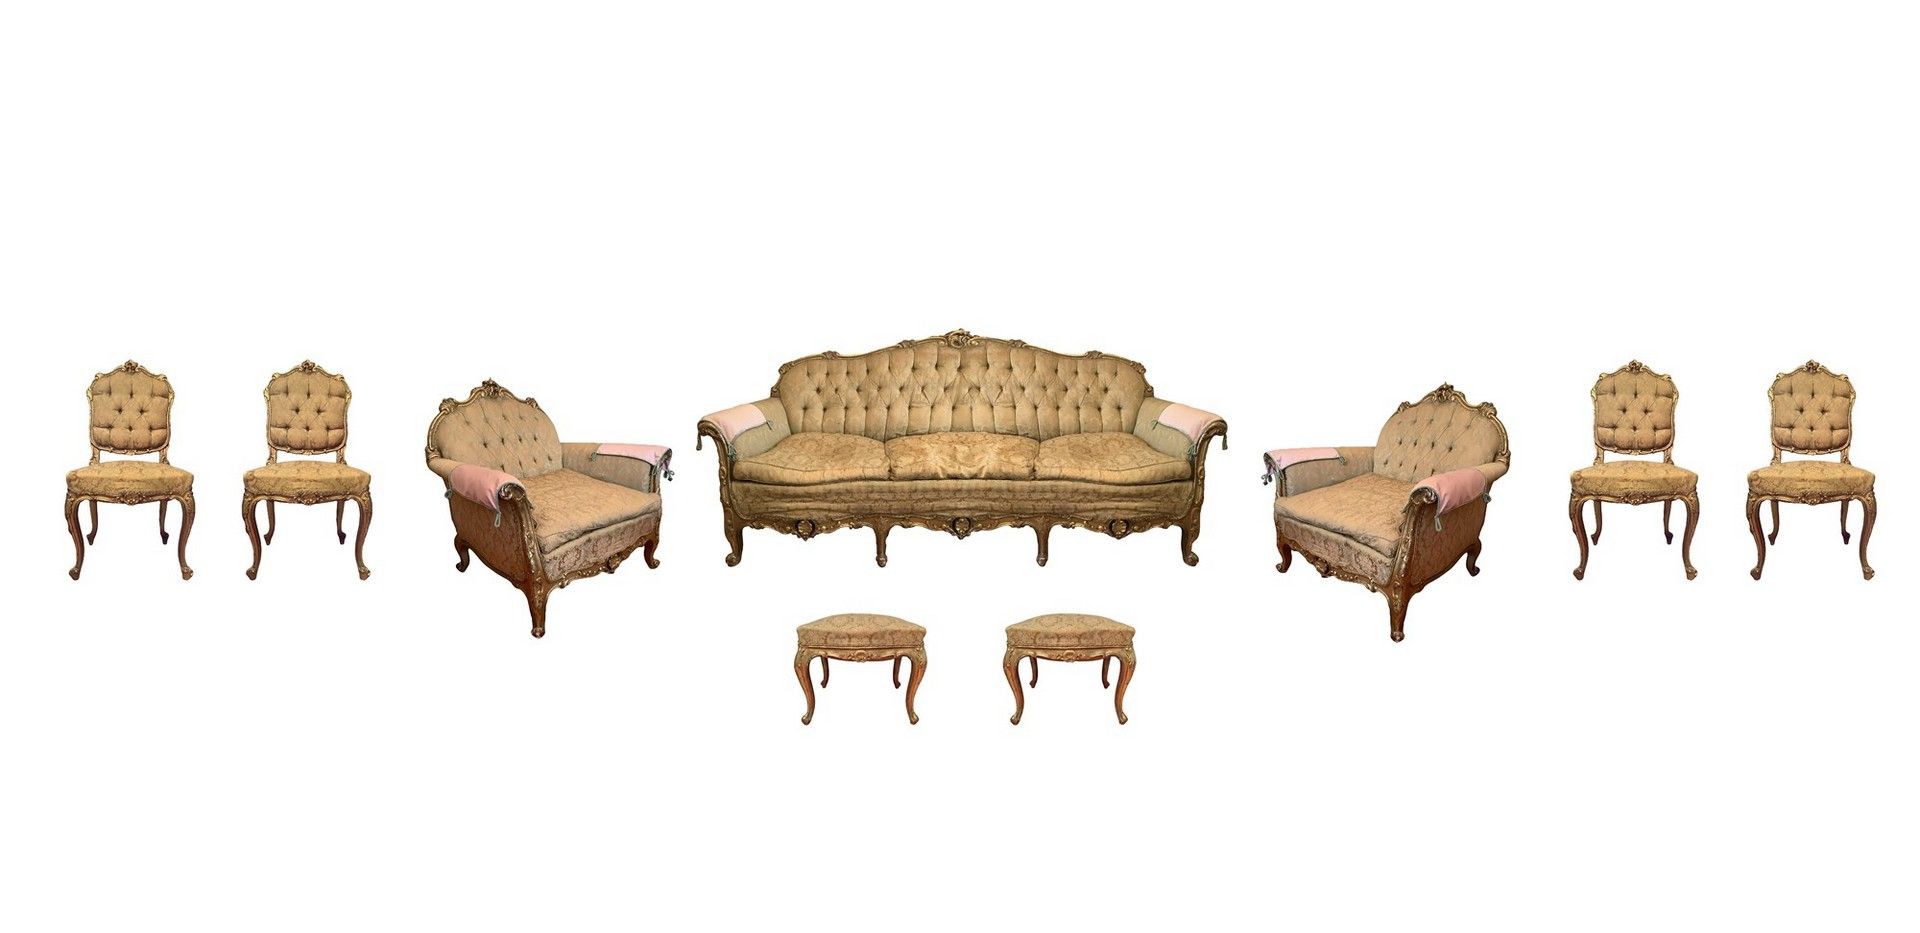 Null 镀金木客厅 , 20世纪中期 沙发100厘米 x 2米 x 50厘米，扶手椅90x60厘米，椅子高100x50厘米，沙发高40，长50x40厘米，角落&hellip;